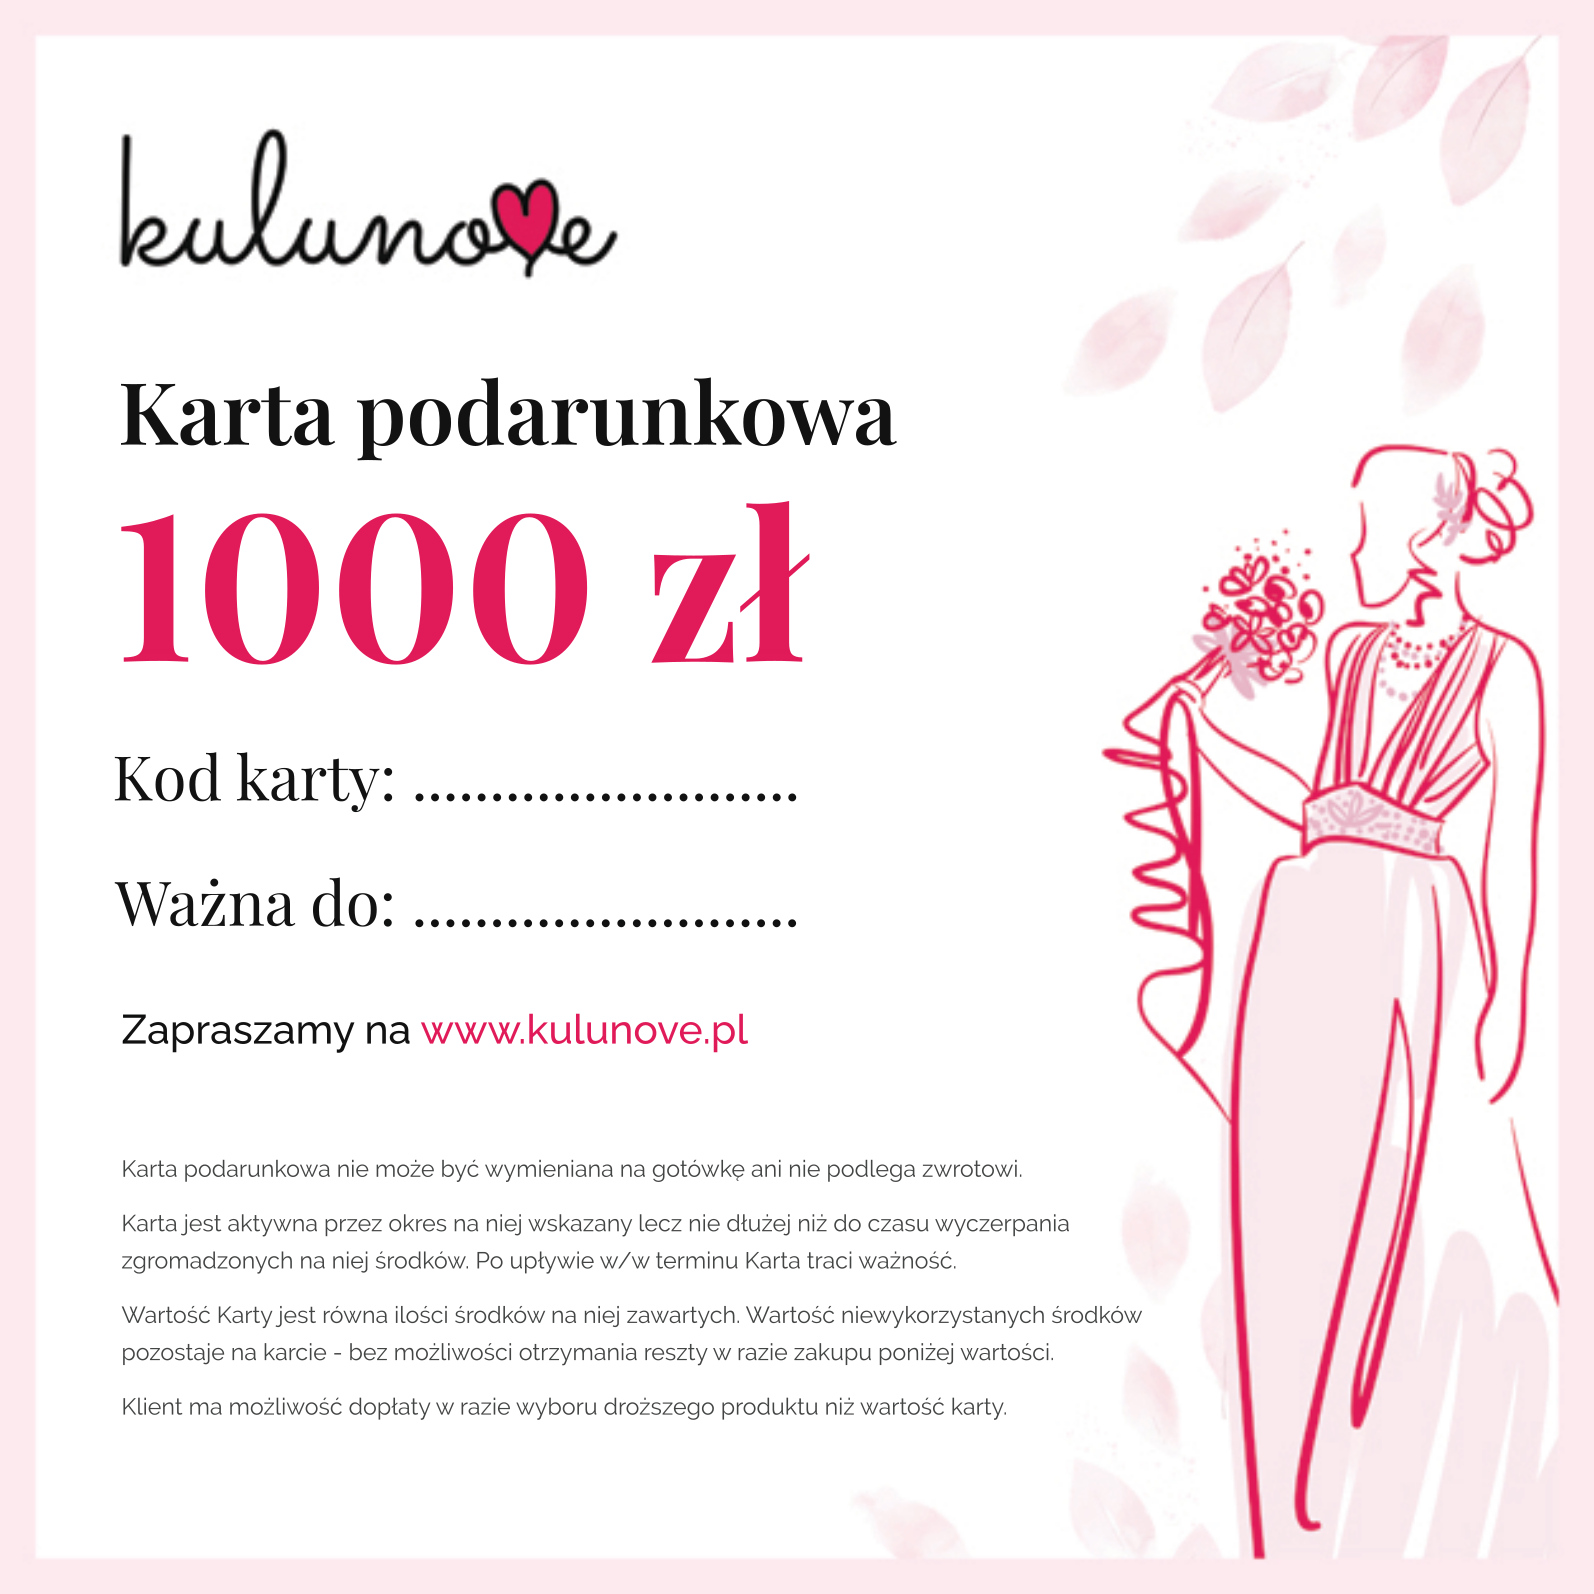 Karta podarunkowa Bon towarowy 1000 zł Kulunove